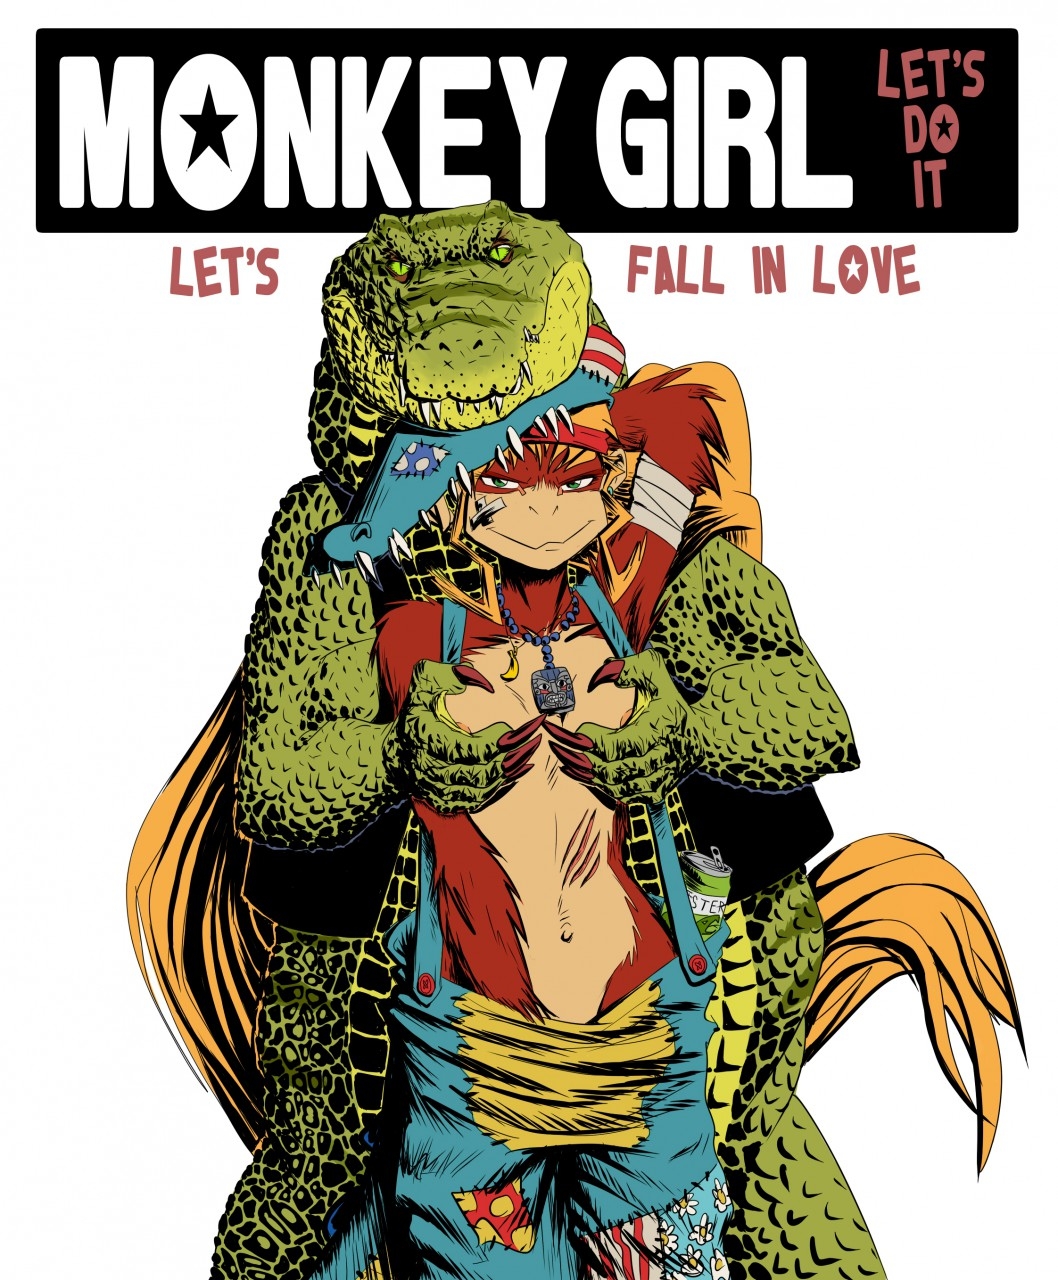 [She's a Monkey] Monkey Girl (Donkey Kong) 0